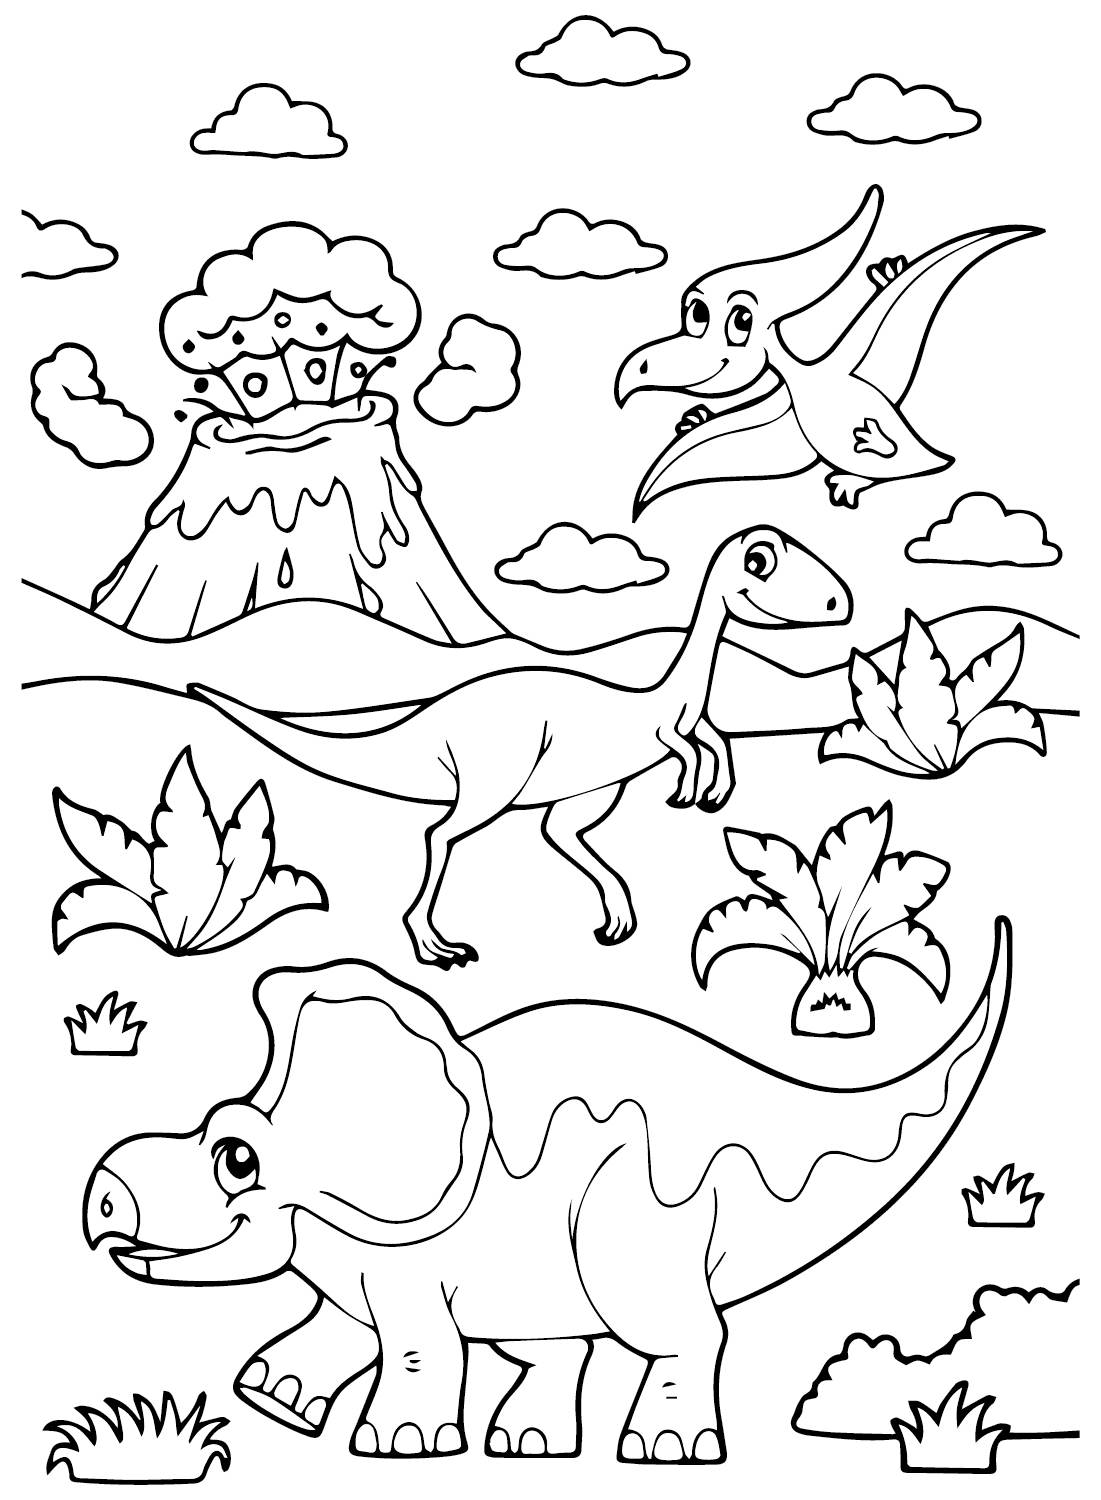 Stampa la pagina da colorare di Protoceratops da Protoceratops